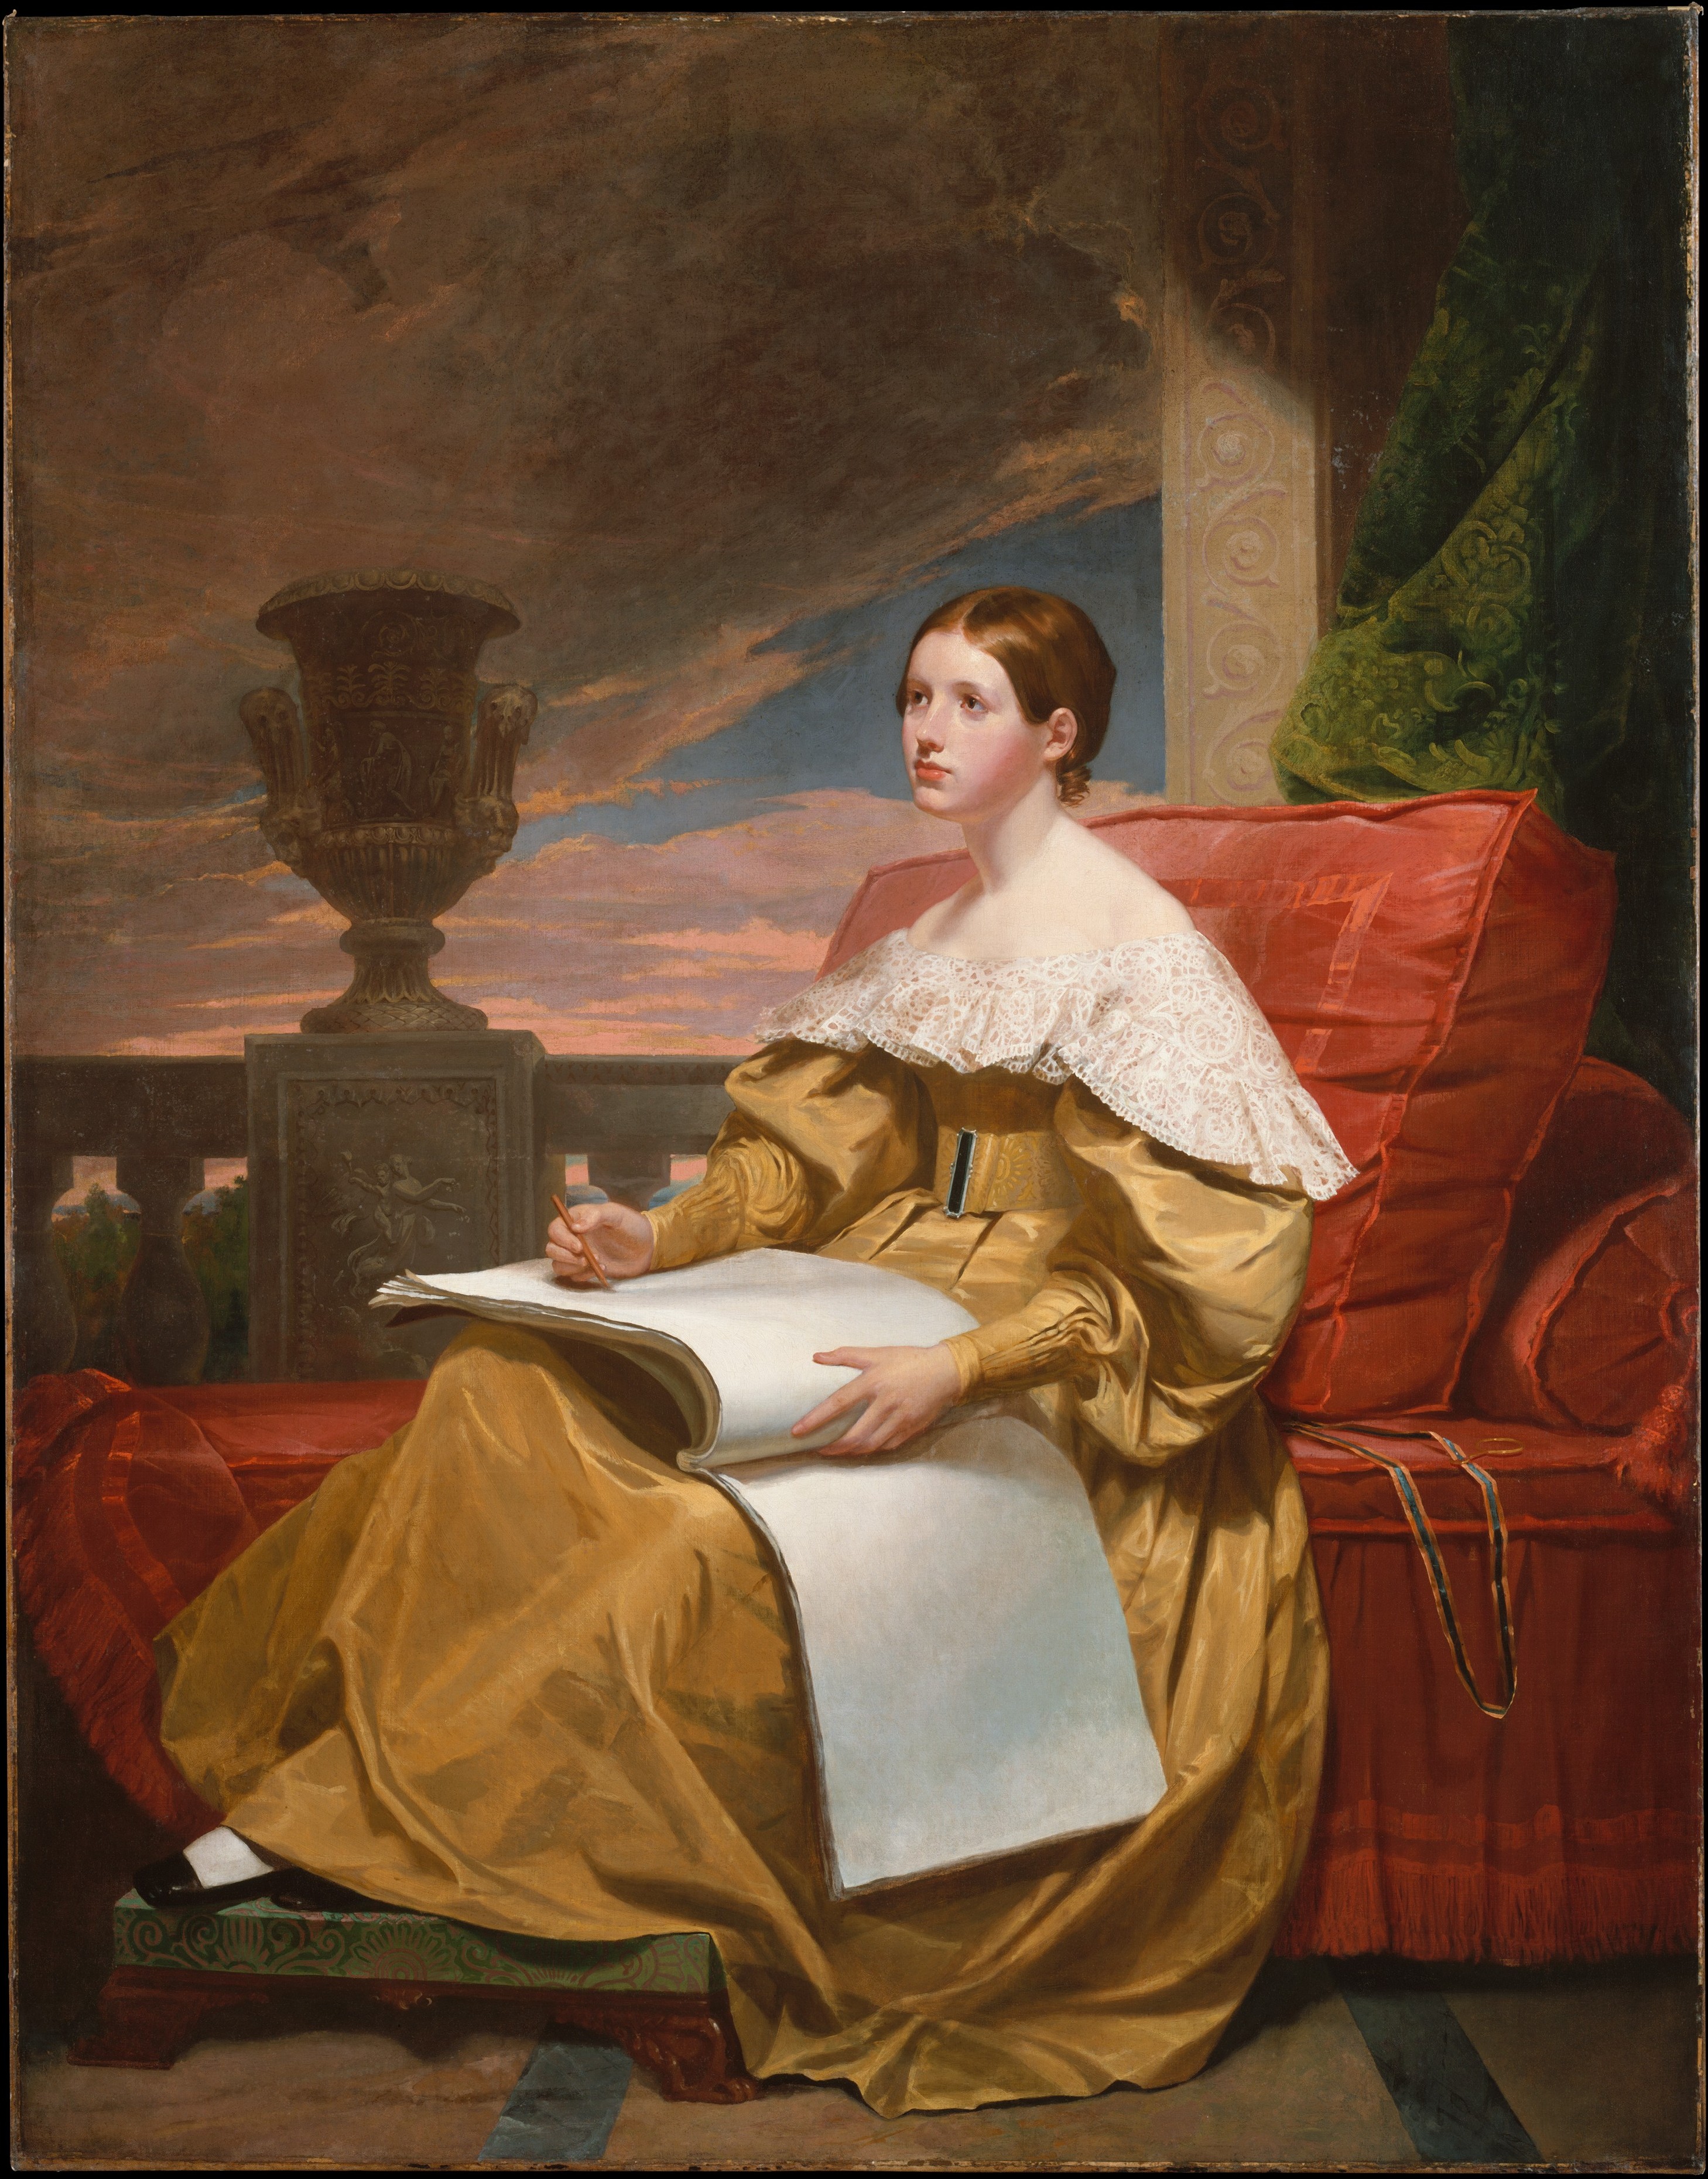 堪比缪斯的苏珊·沃克·莫尔斯 by 塞缪尔 F·B·莫斯 - 约1836至1837 - 187.3 x 146.4 cm 